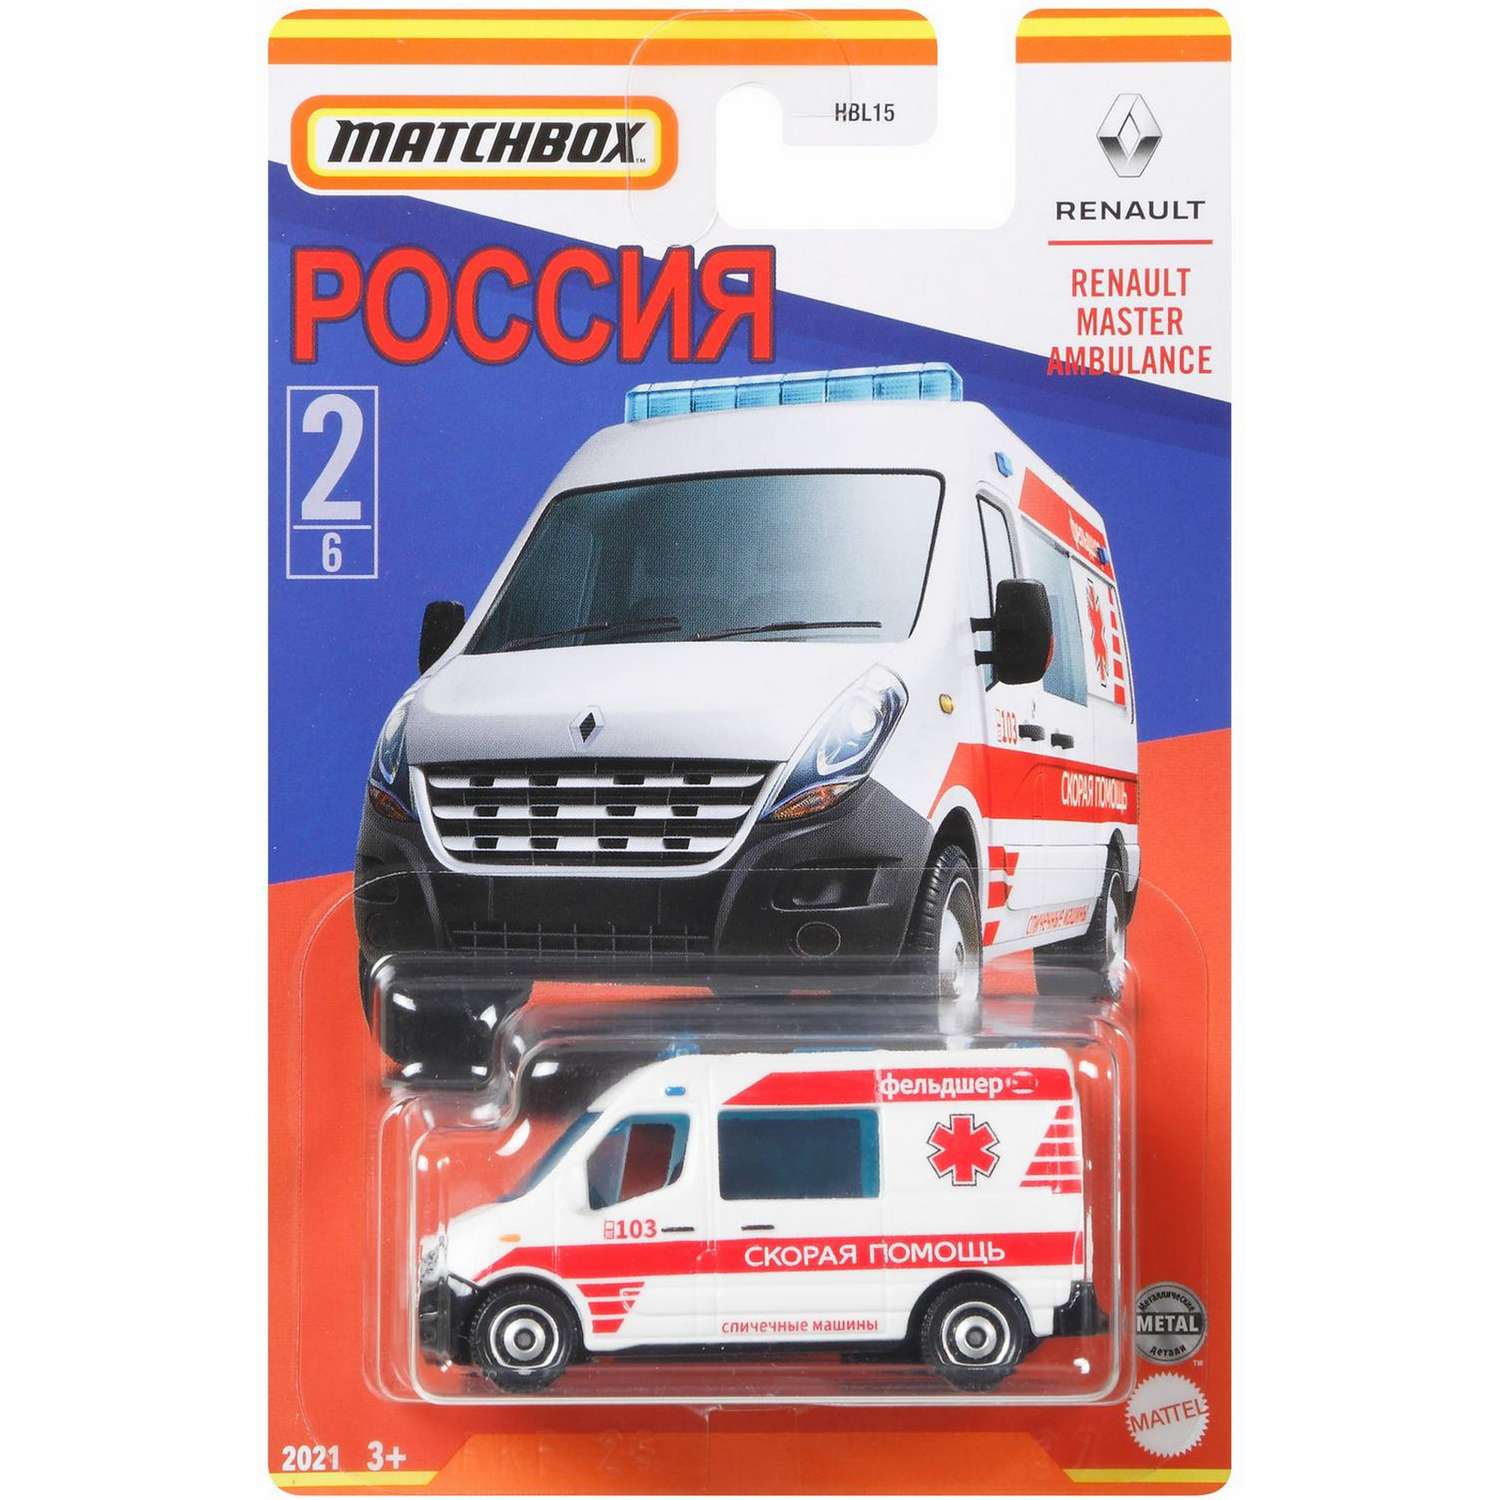 Машинка Matchbox Россия в ассортименте HBL15 HBL15 - фото 6